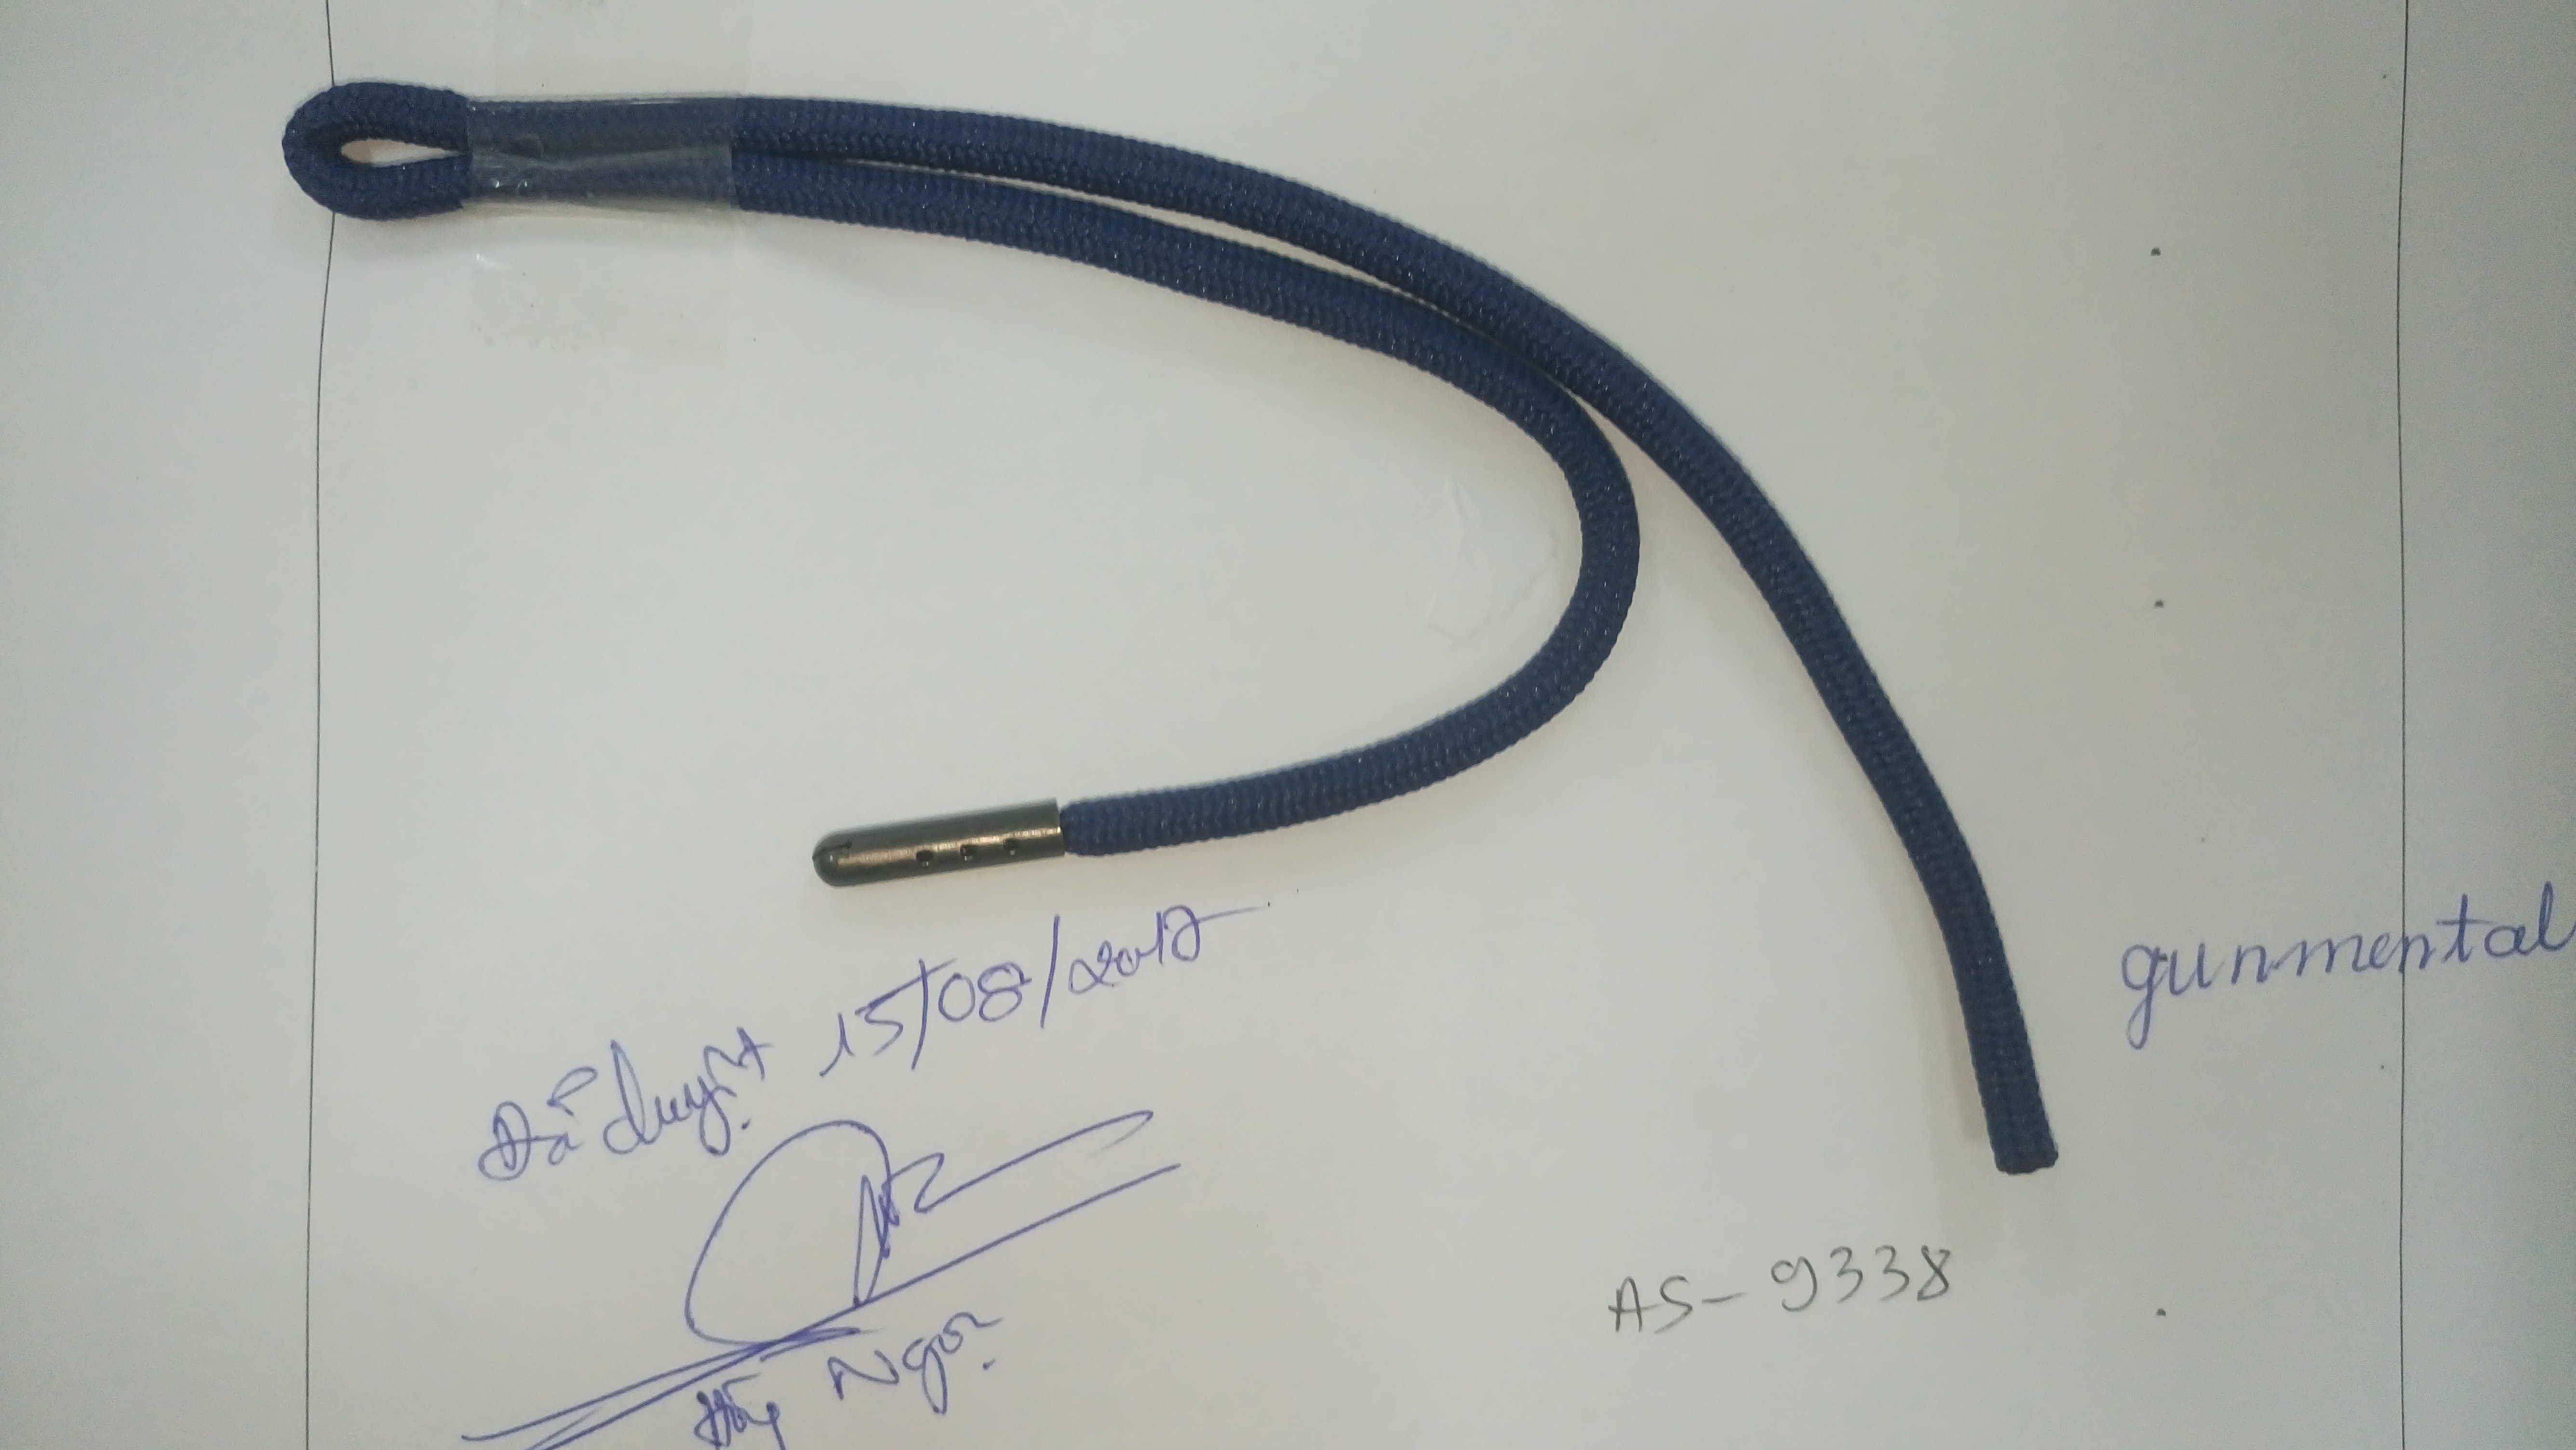 5mm, draw cord, dập đầu Gunmetal, màu blue print 19-3939 TCX = PB2152, code # LP-1